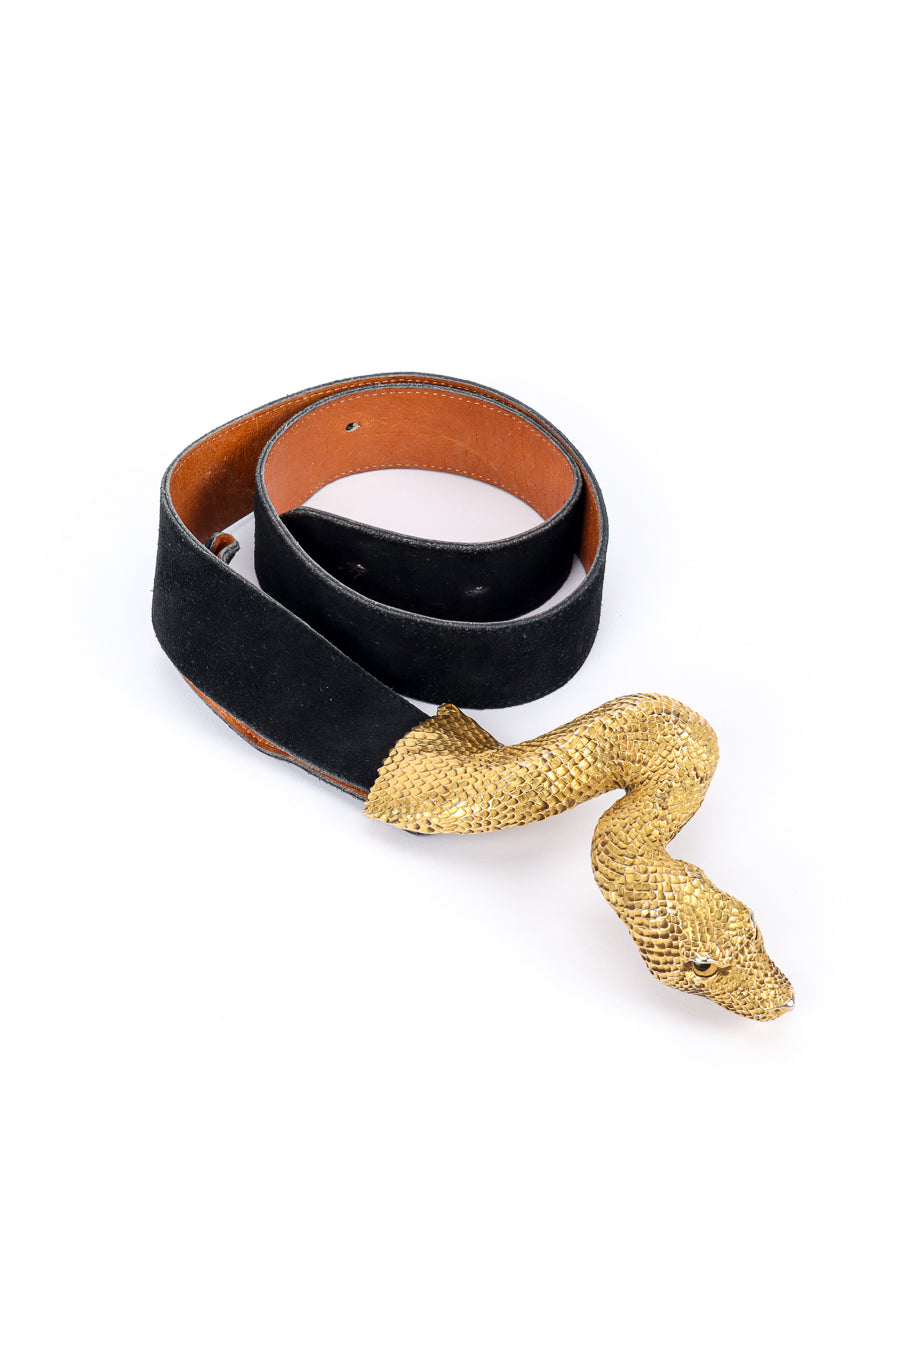 Vintage C. Ross Suede Snake Buckle Belt front belt coiled @recessla